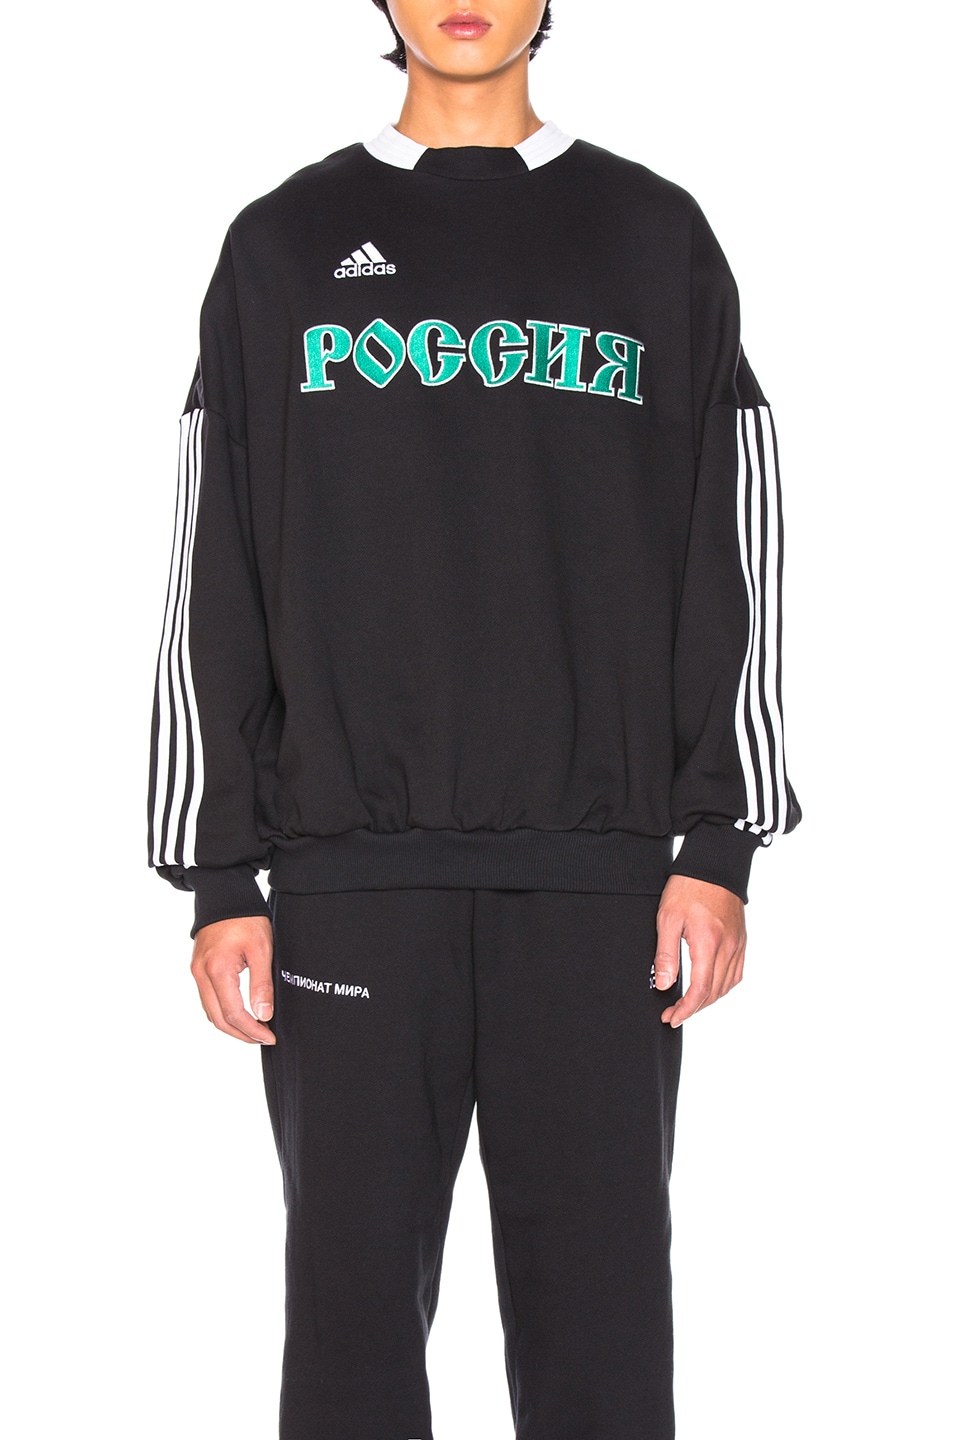 Gosha Rubchinskiy x Adidas Sweatshirt in Black | FWRD